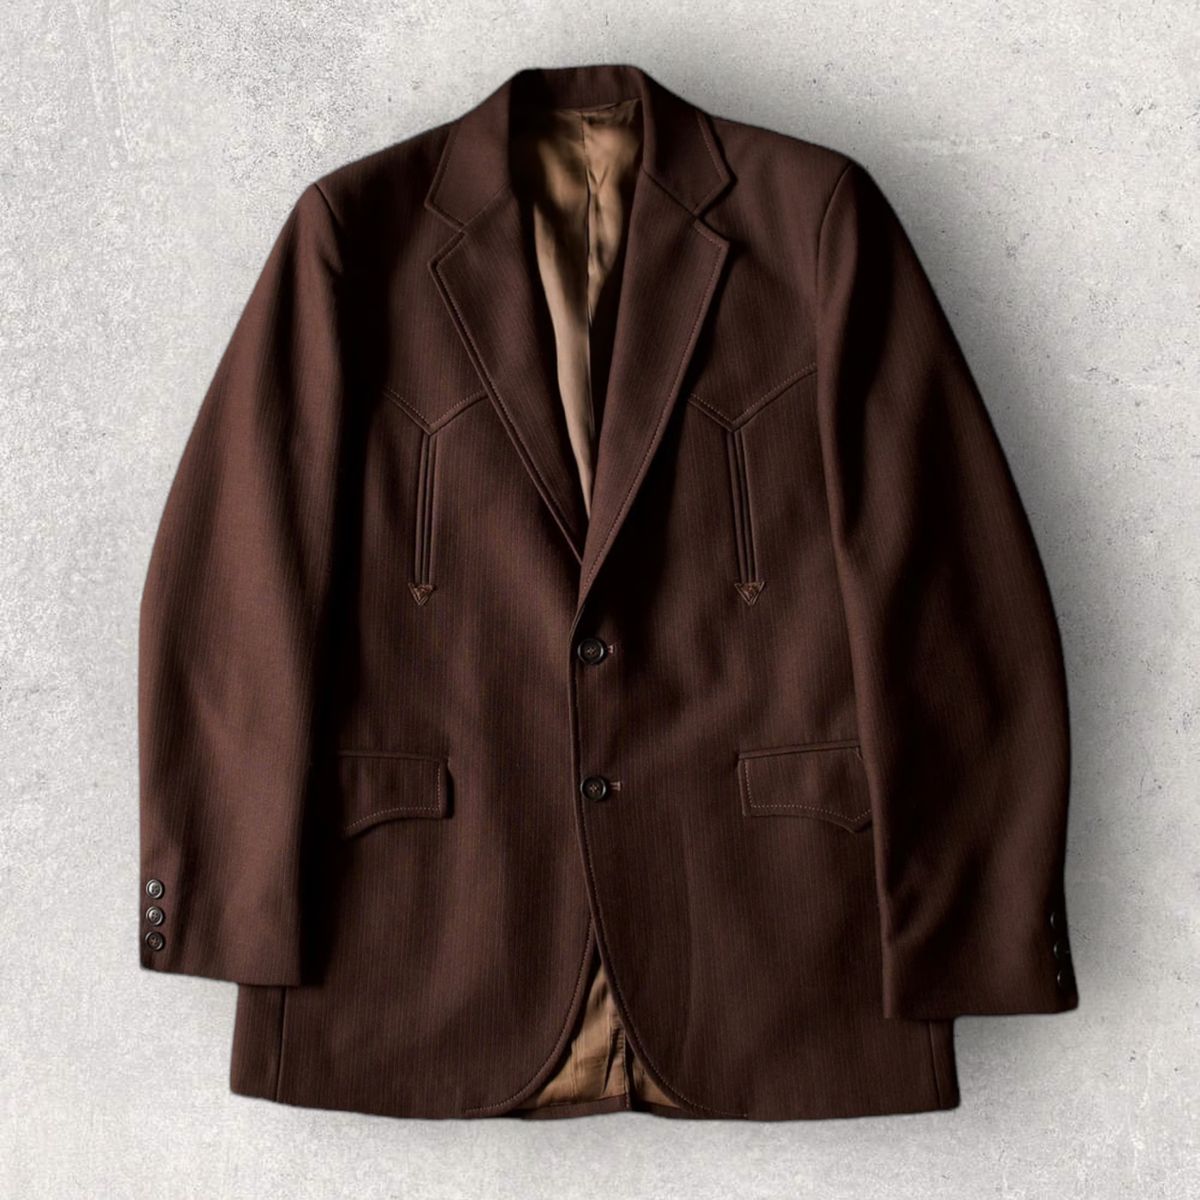 Vintage western tailored jacket "BROWN"